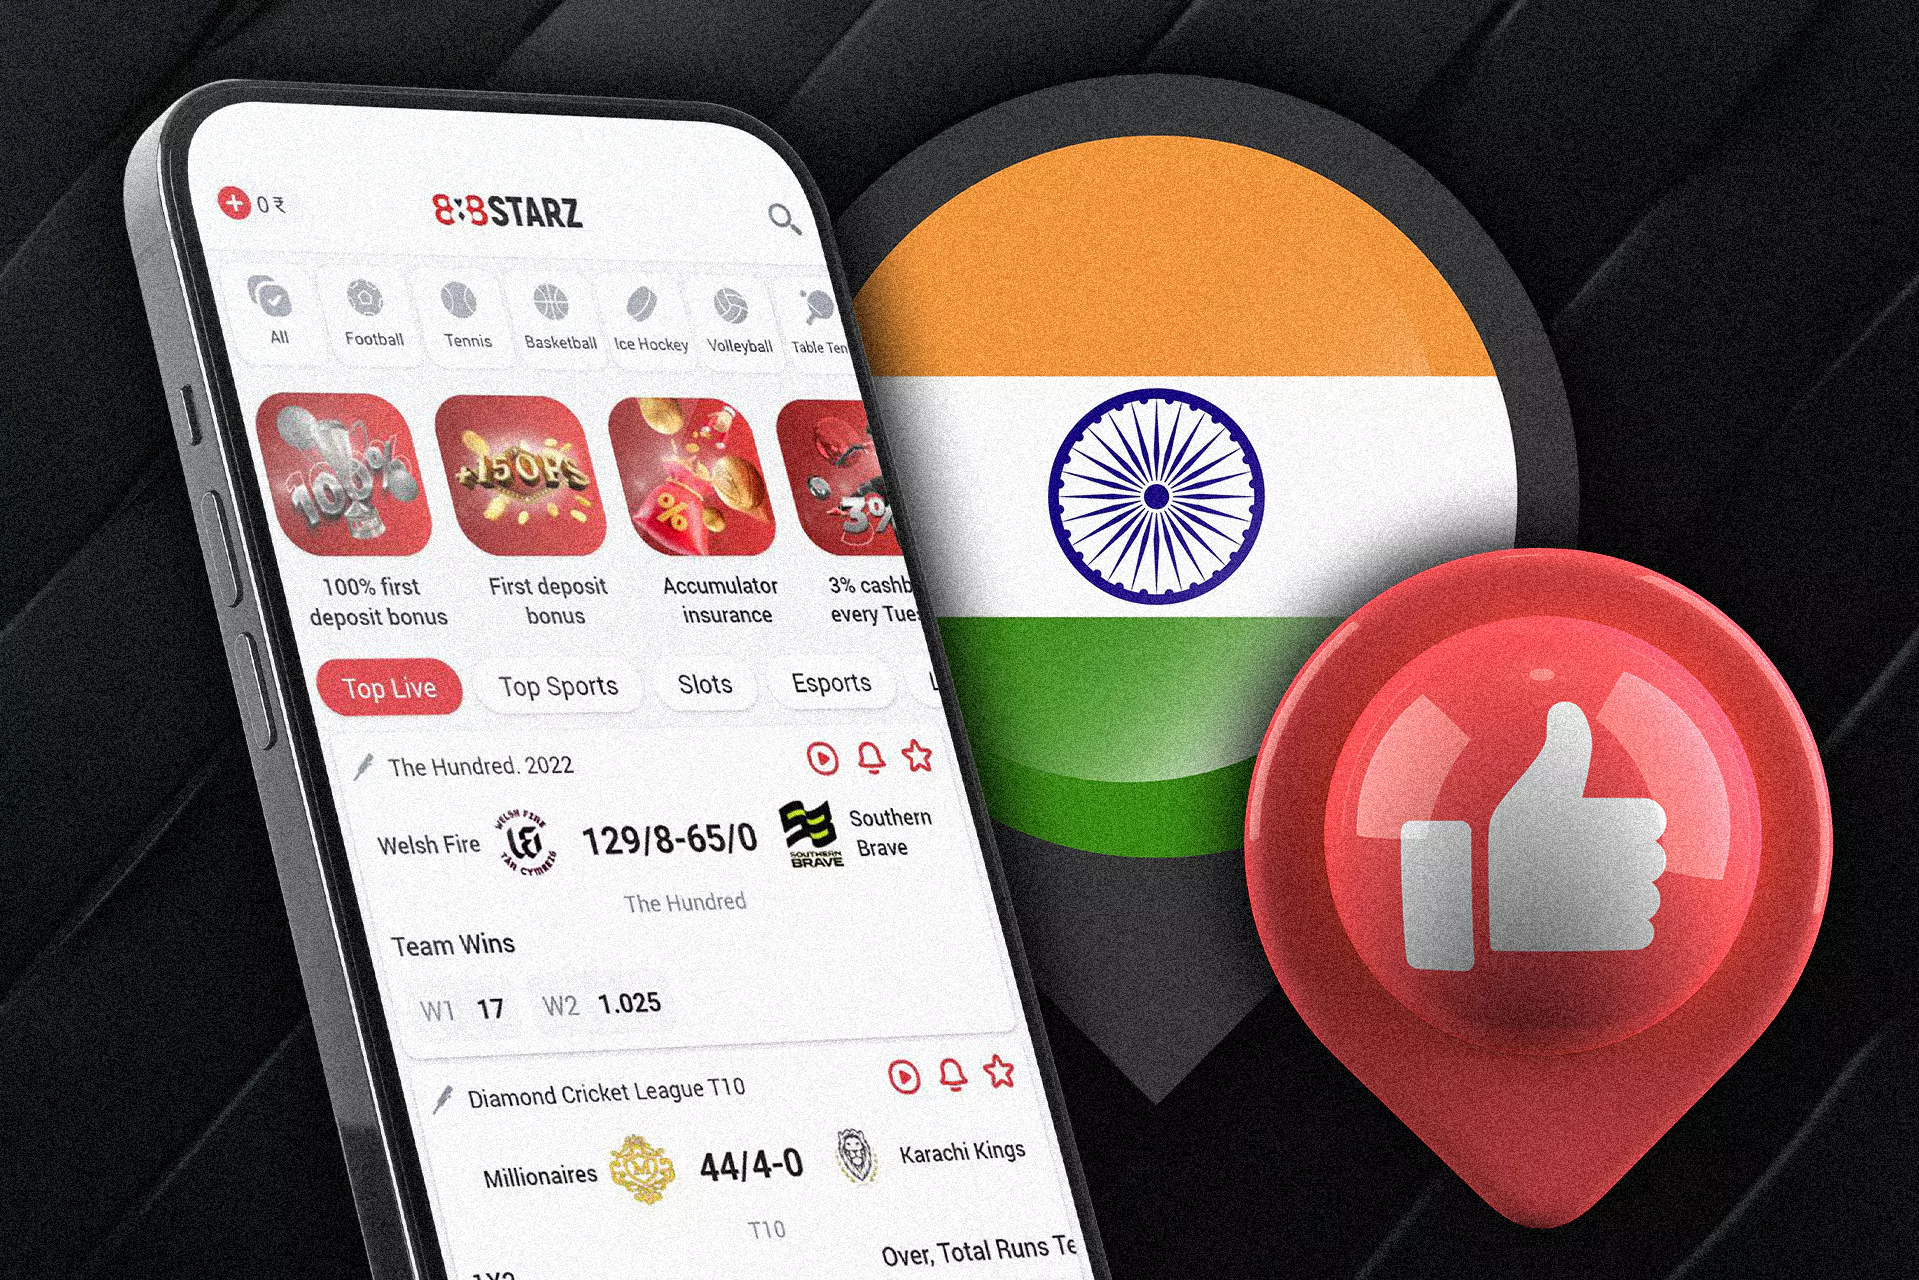 888starz ऐप में, उपयोगकर्ता INR के साथ खाते को टॉप अप कर सकते हैं, भारतीय भुगतान प्रणालियों से जमा कर सकते हैं और निकाल सकते हैं और सबसे लोकप्रिय भारतीय मैचों पर दांव लगा सकते हैं।